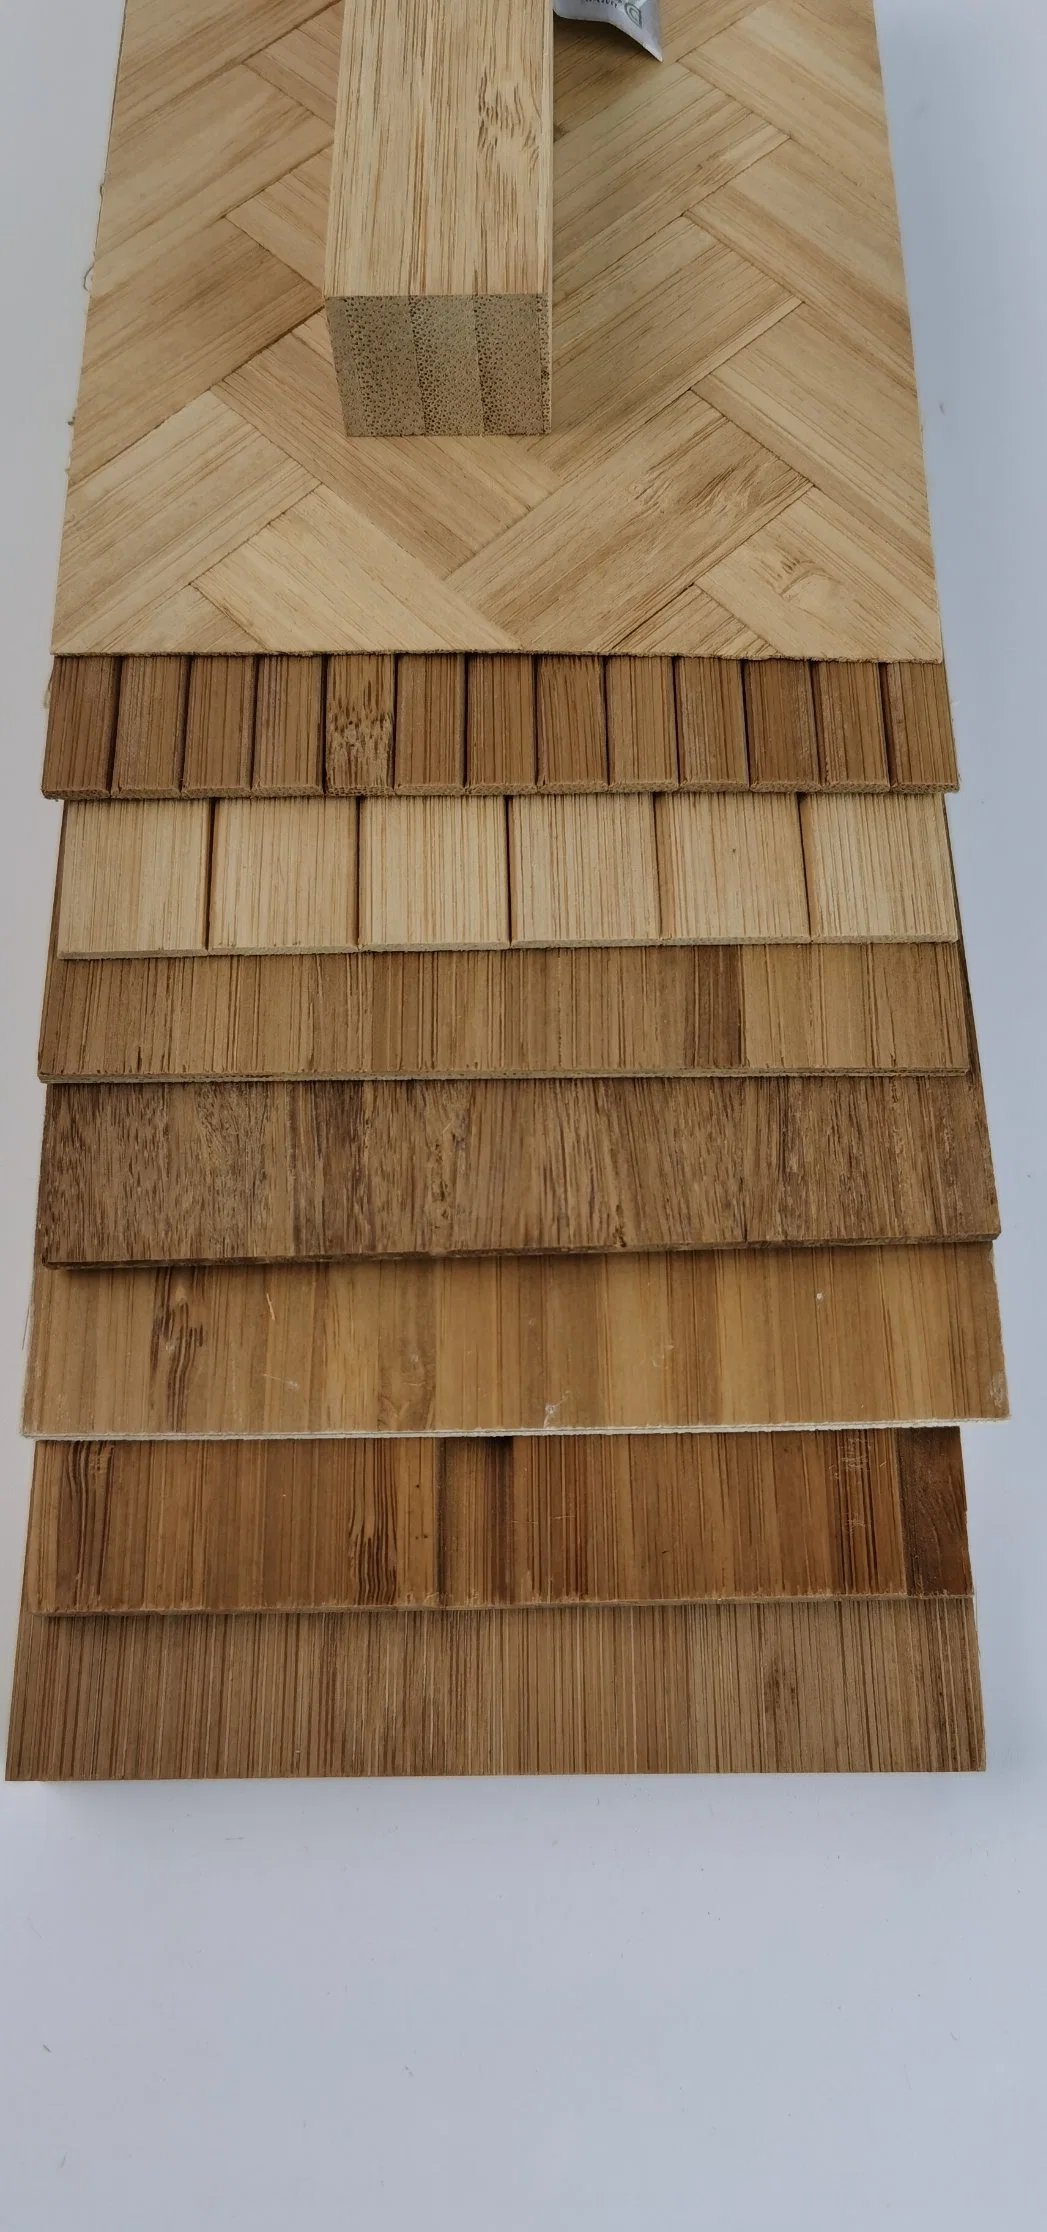 Панель отделки Natural Wood Crown Cut White Oak Timber